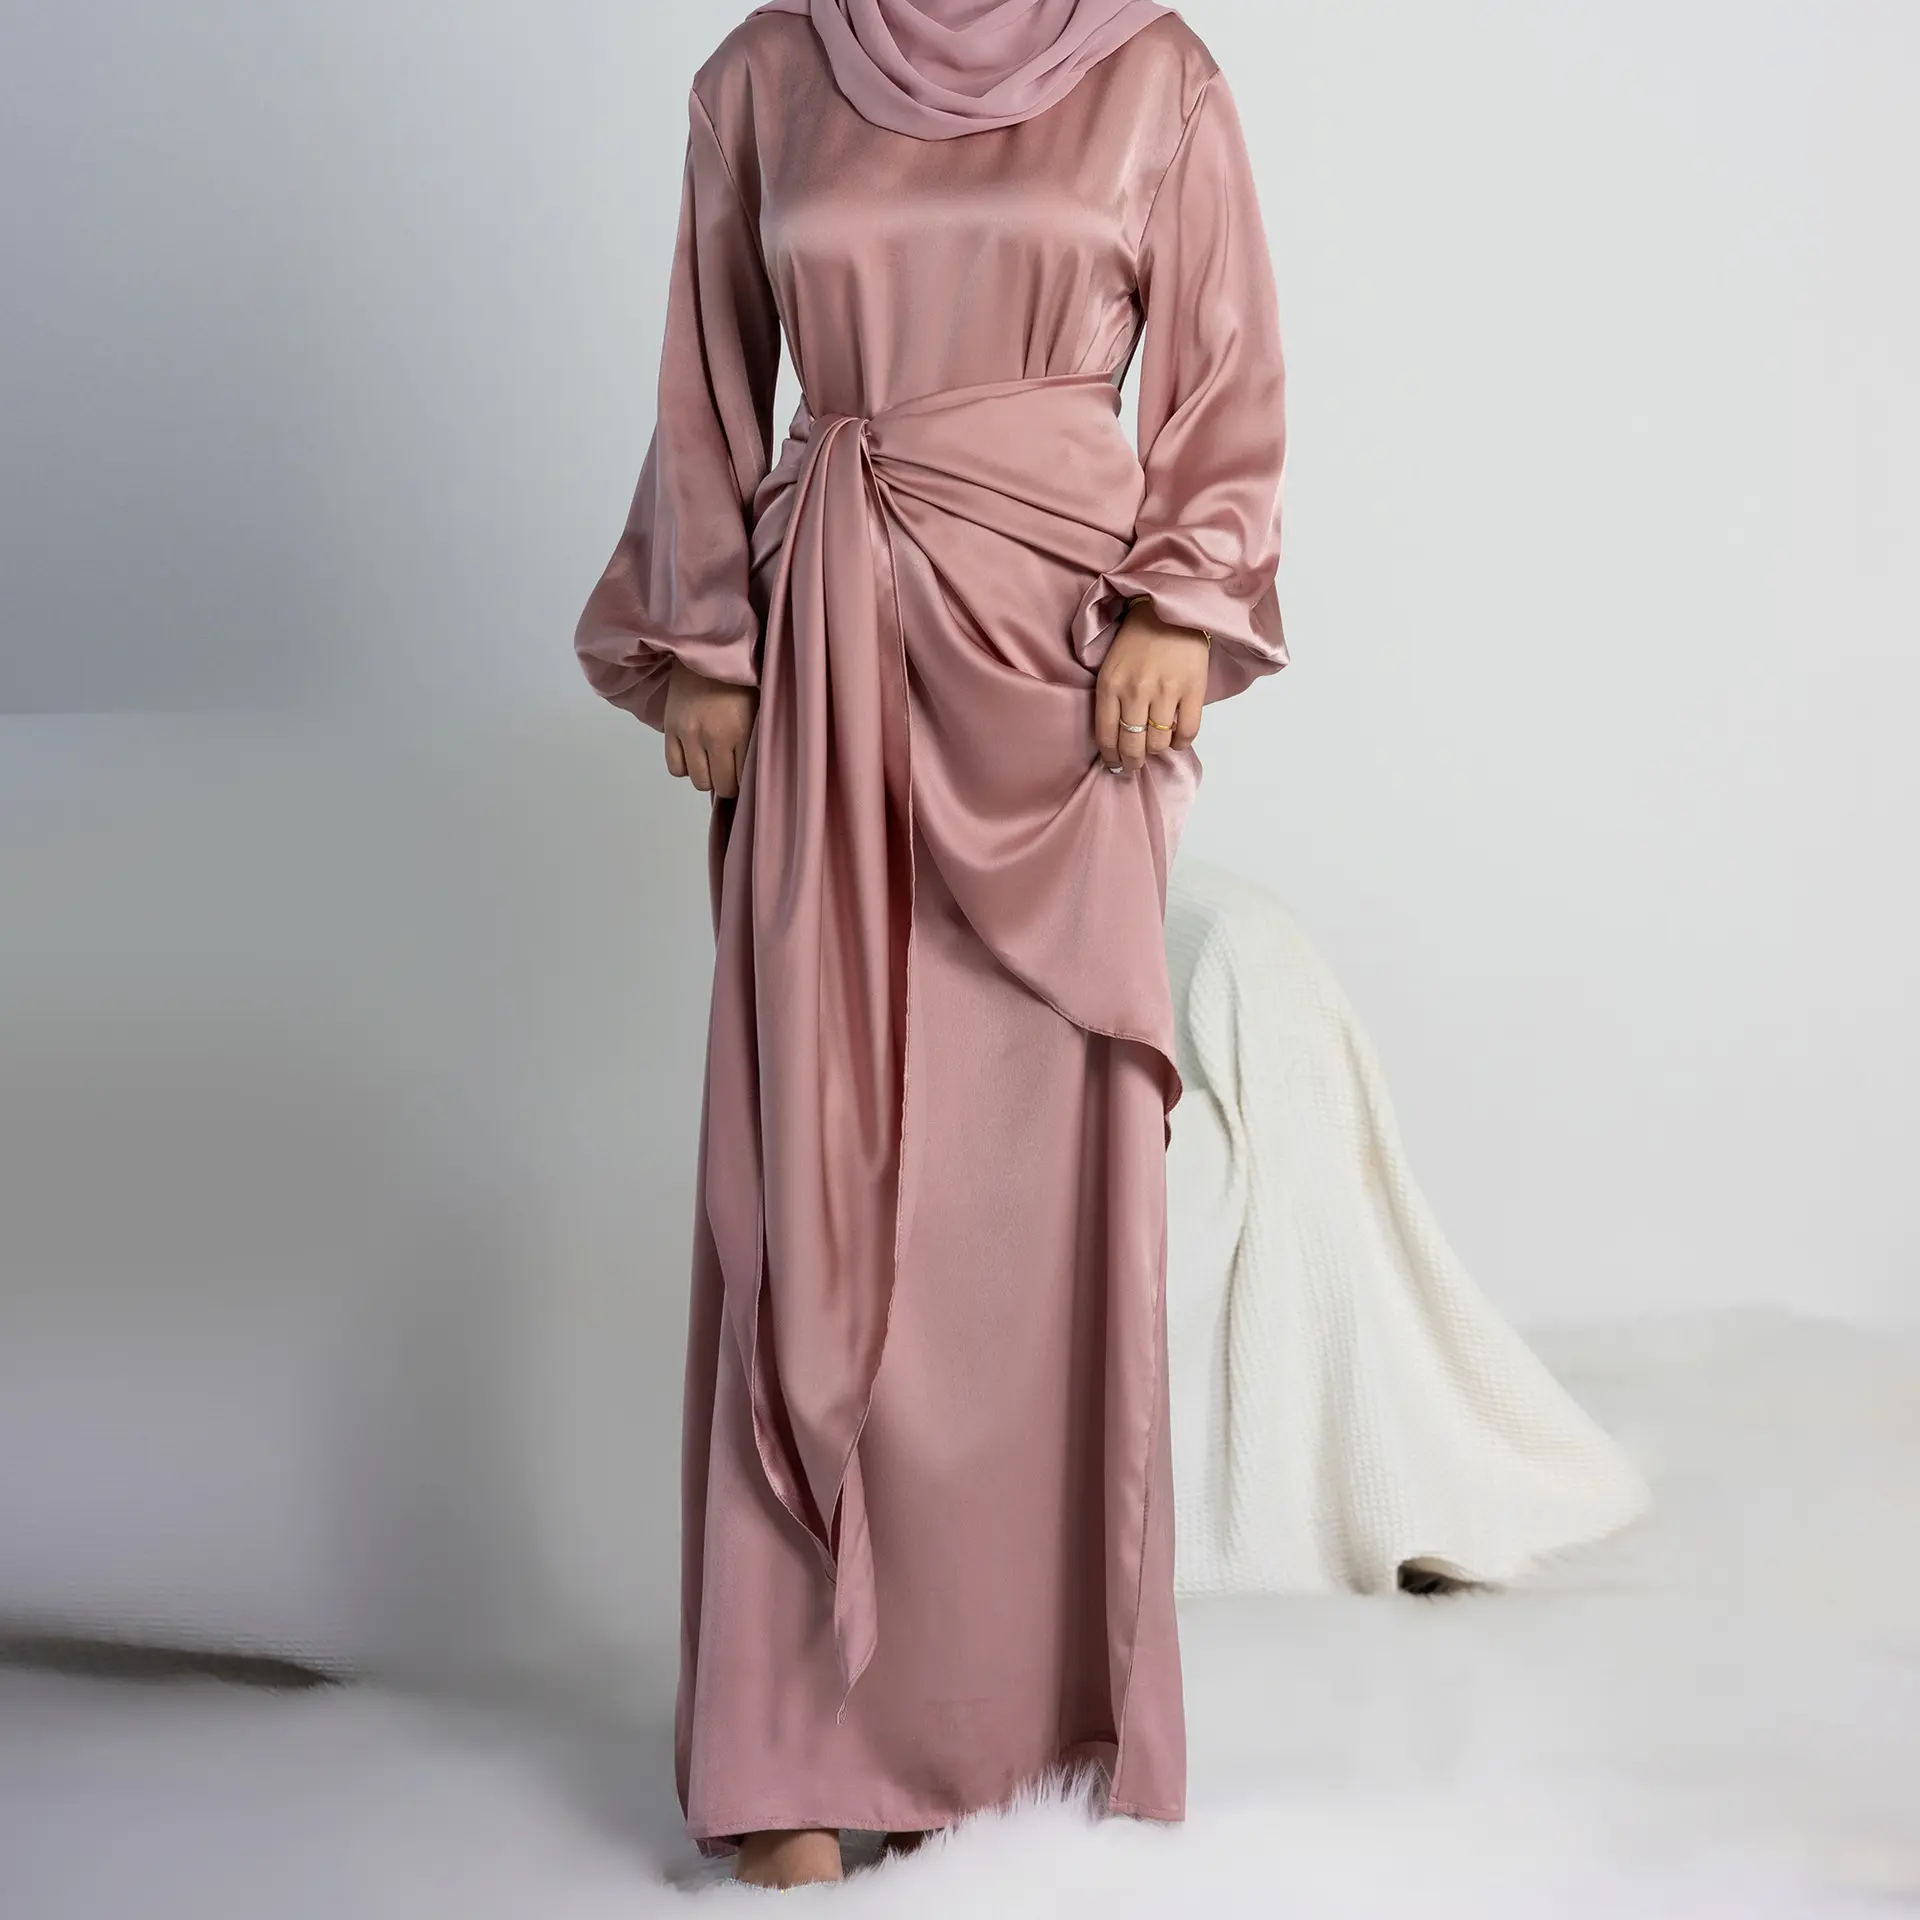 Yeni Eid islam giyim saten 2 adet mütevazı elbiseler Maxi Abaya müslüman kızlar için Abaya Set